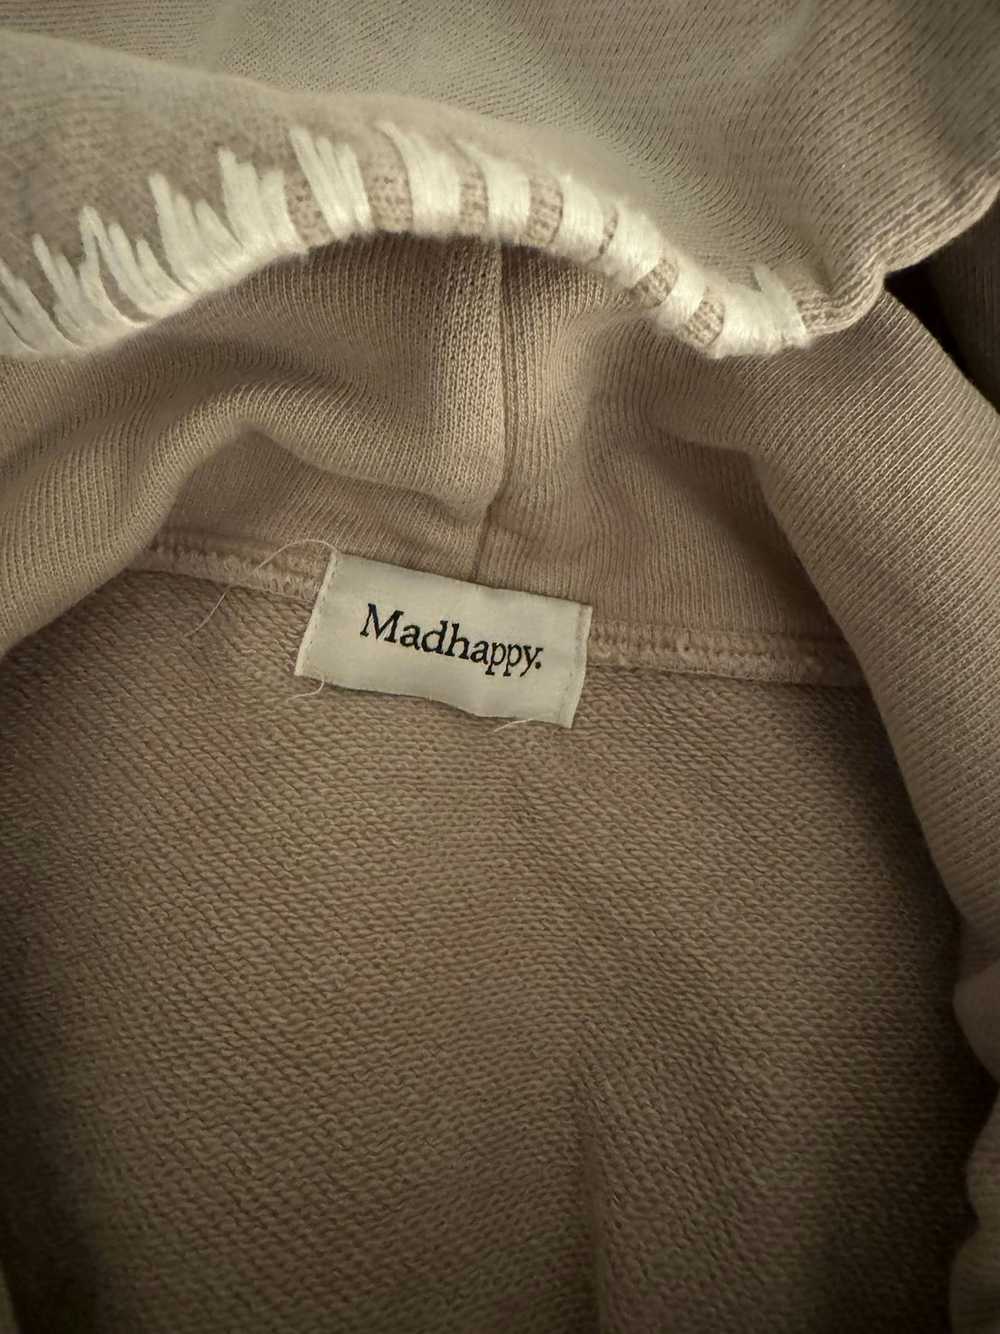 Madhappy Madhappy hoodie - image 6